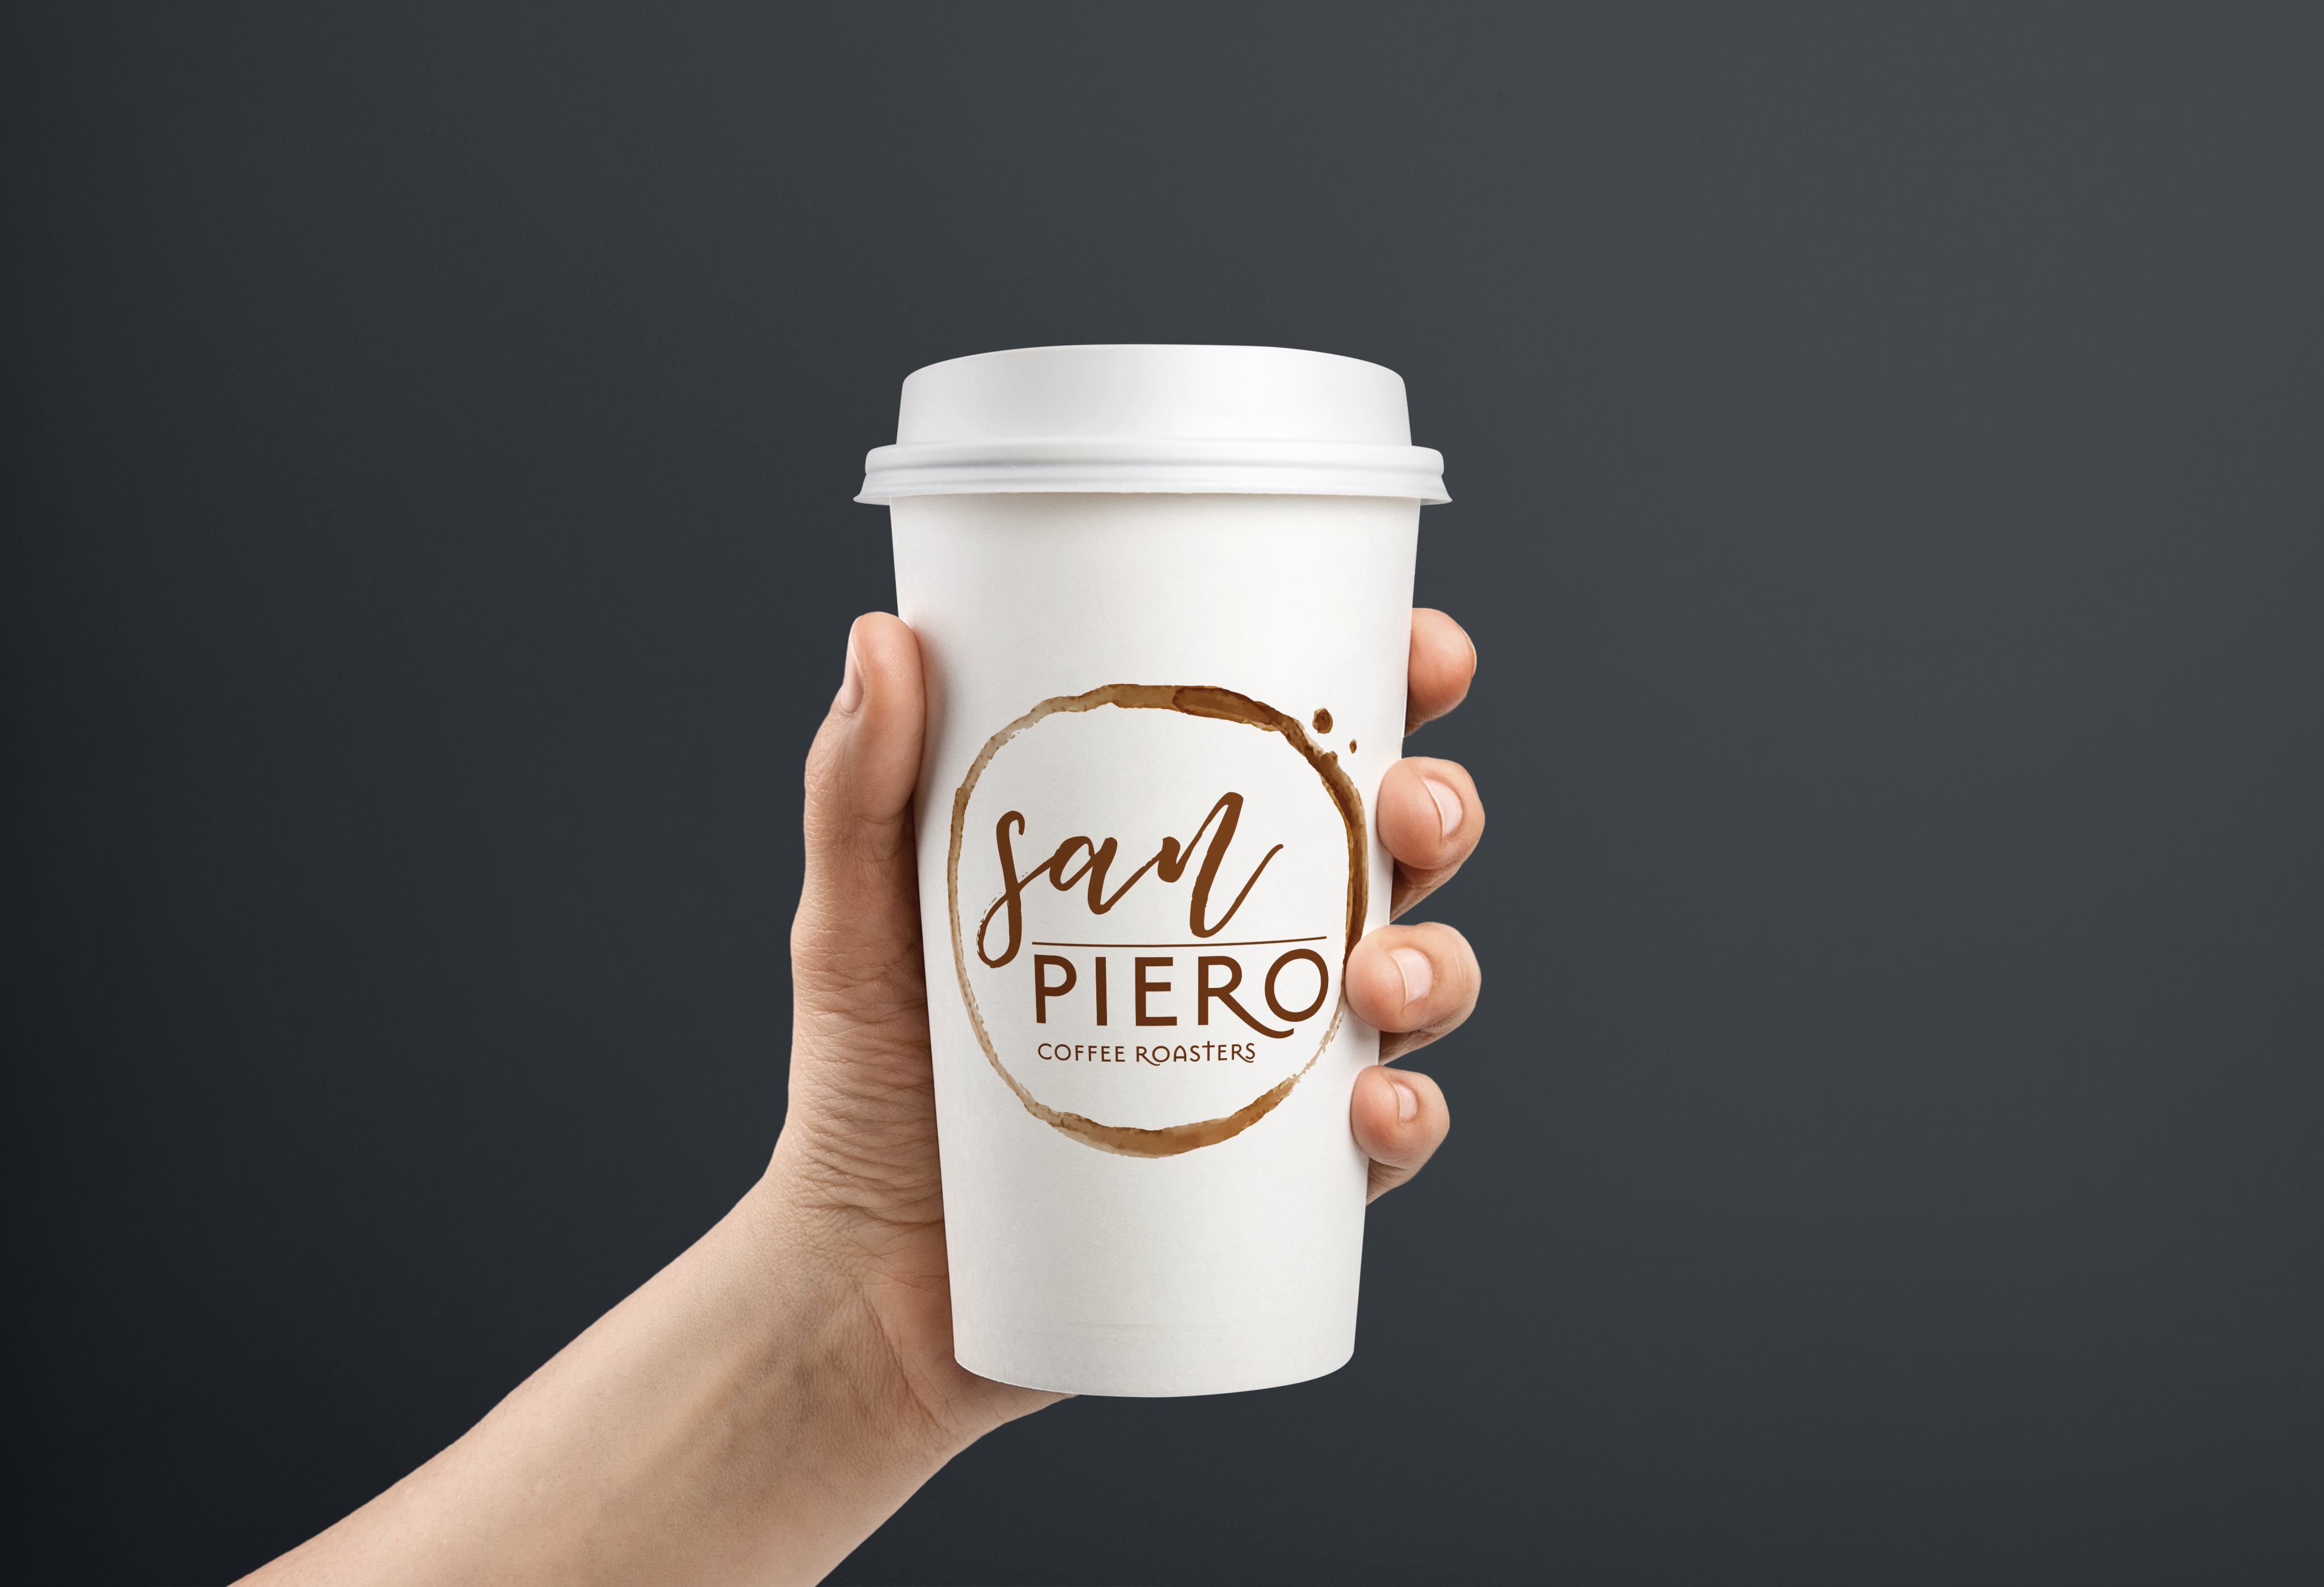 San Piero Coffee Roasters logo on takeaway cup